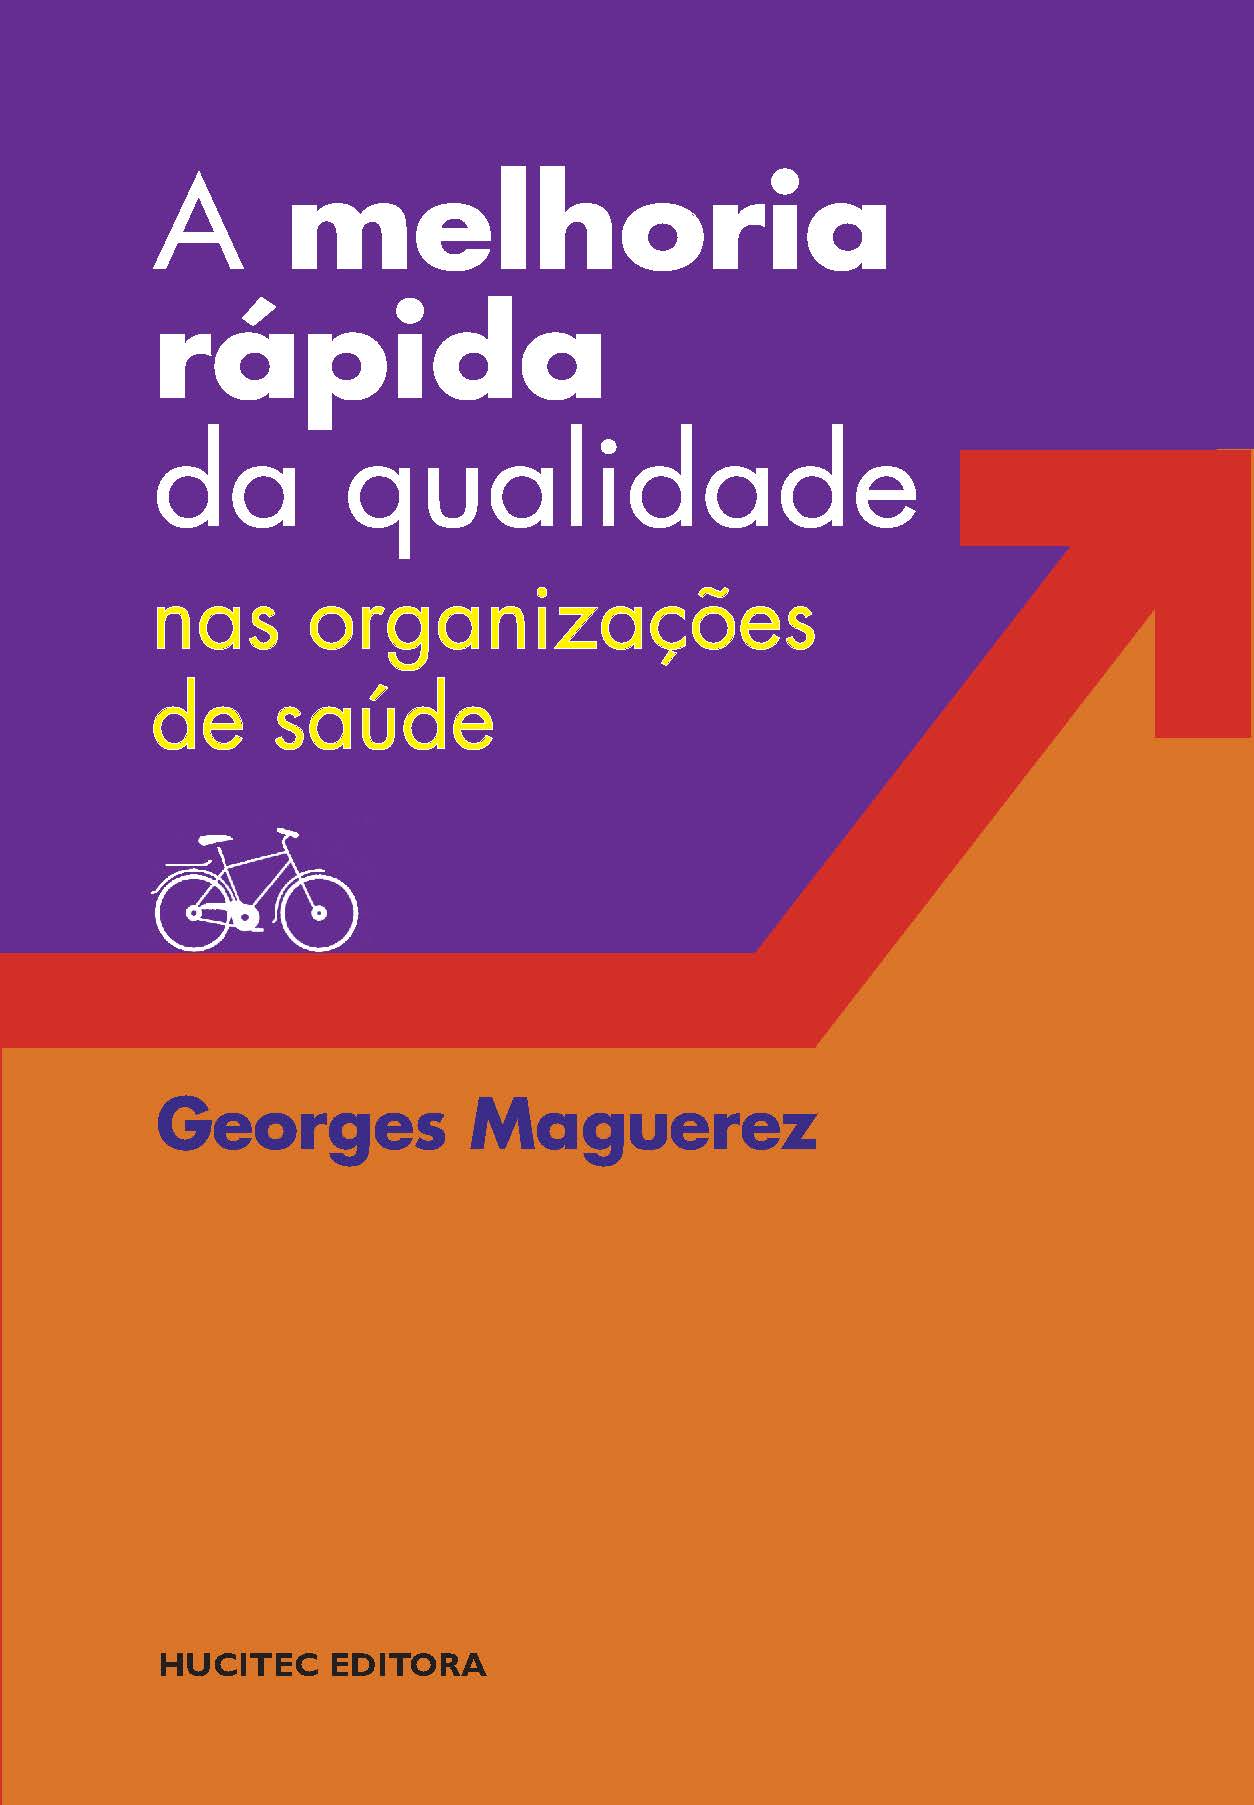 Georges Maguerez  |  A melhoria rápida da qualidade nas organizações de saúde